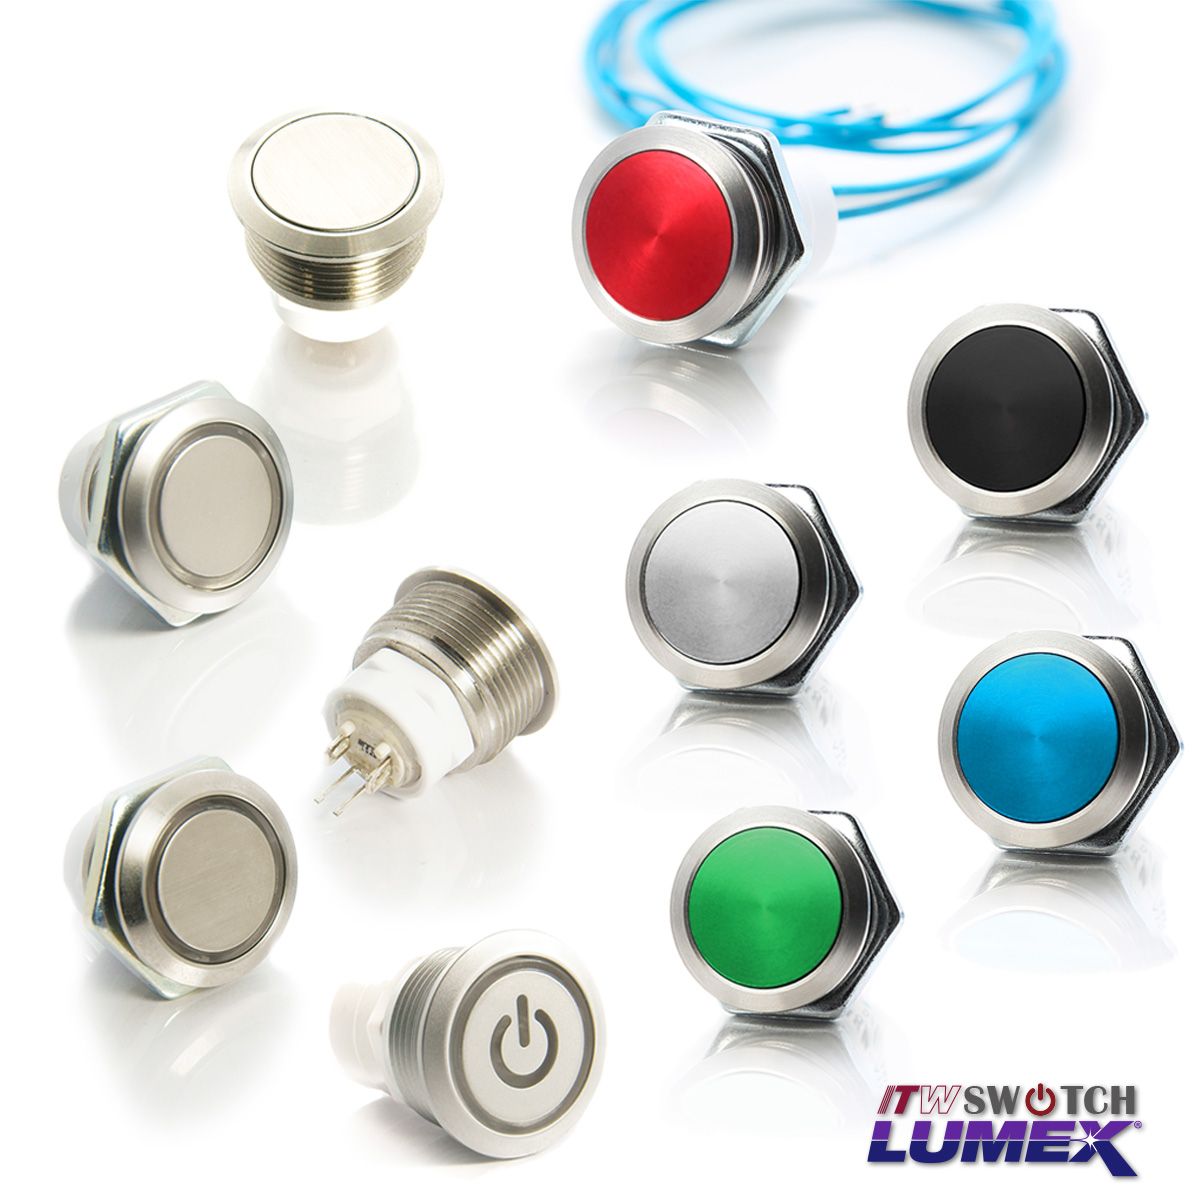 ITW Lumex Switchbiedt drukknopschakelaars met verschillende ontwerpopties, die allemaal zijn voorzien van een paneeluitsparing van 19 mm.